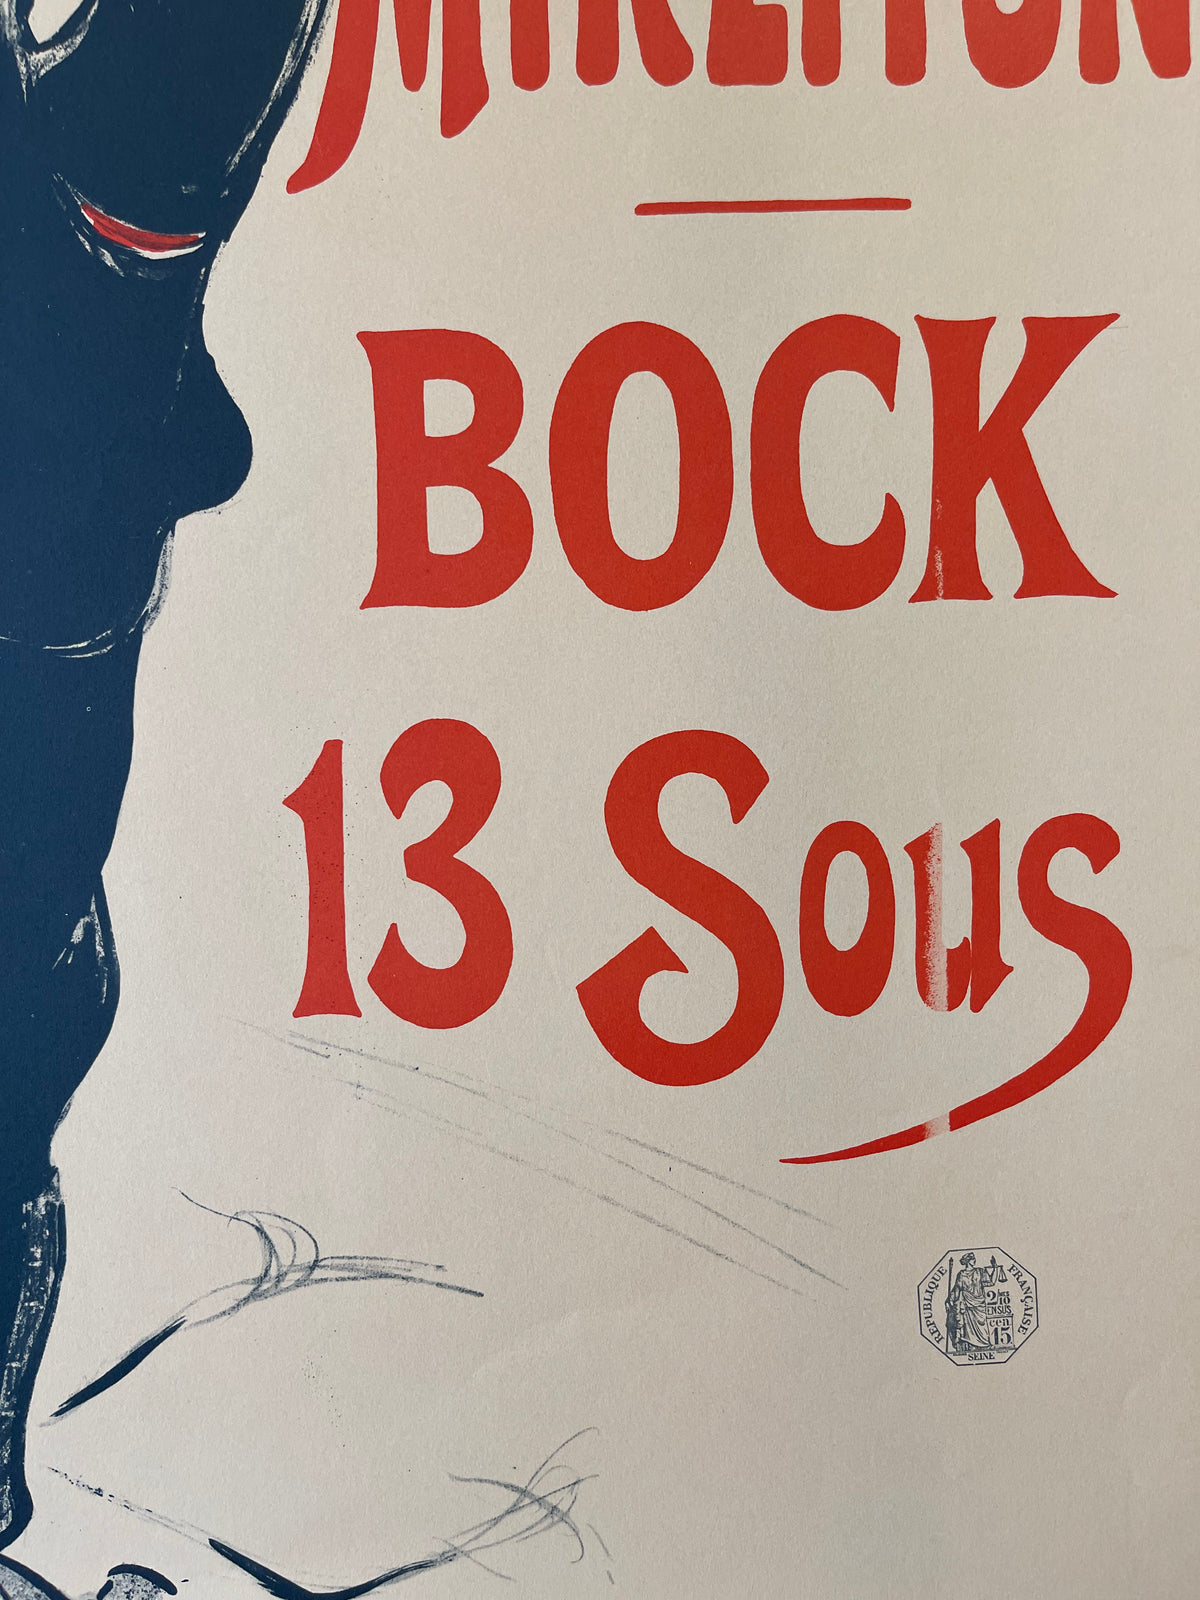 Tous les Soirs Bruant au Mirliton Bock 13 Sous by Henri de Toulouse-Lautrec